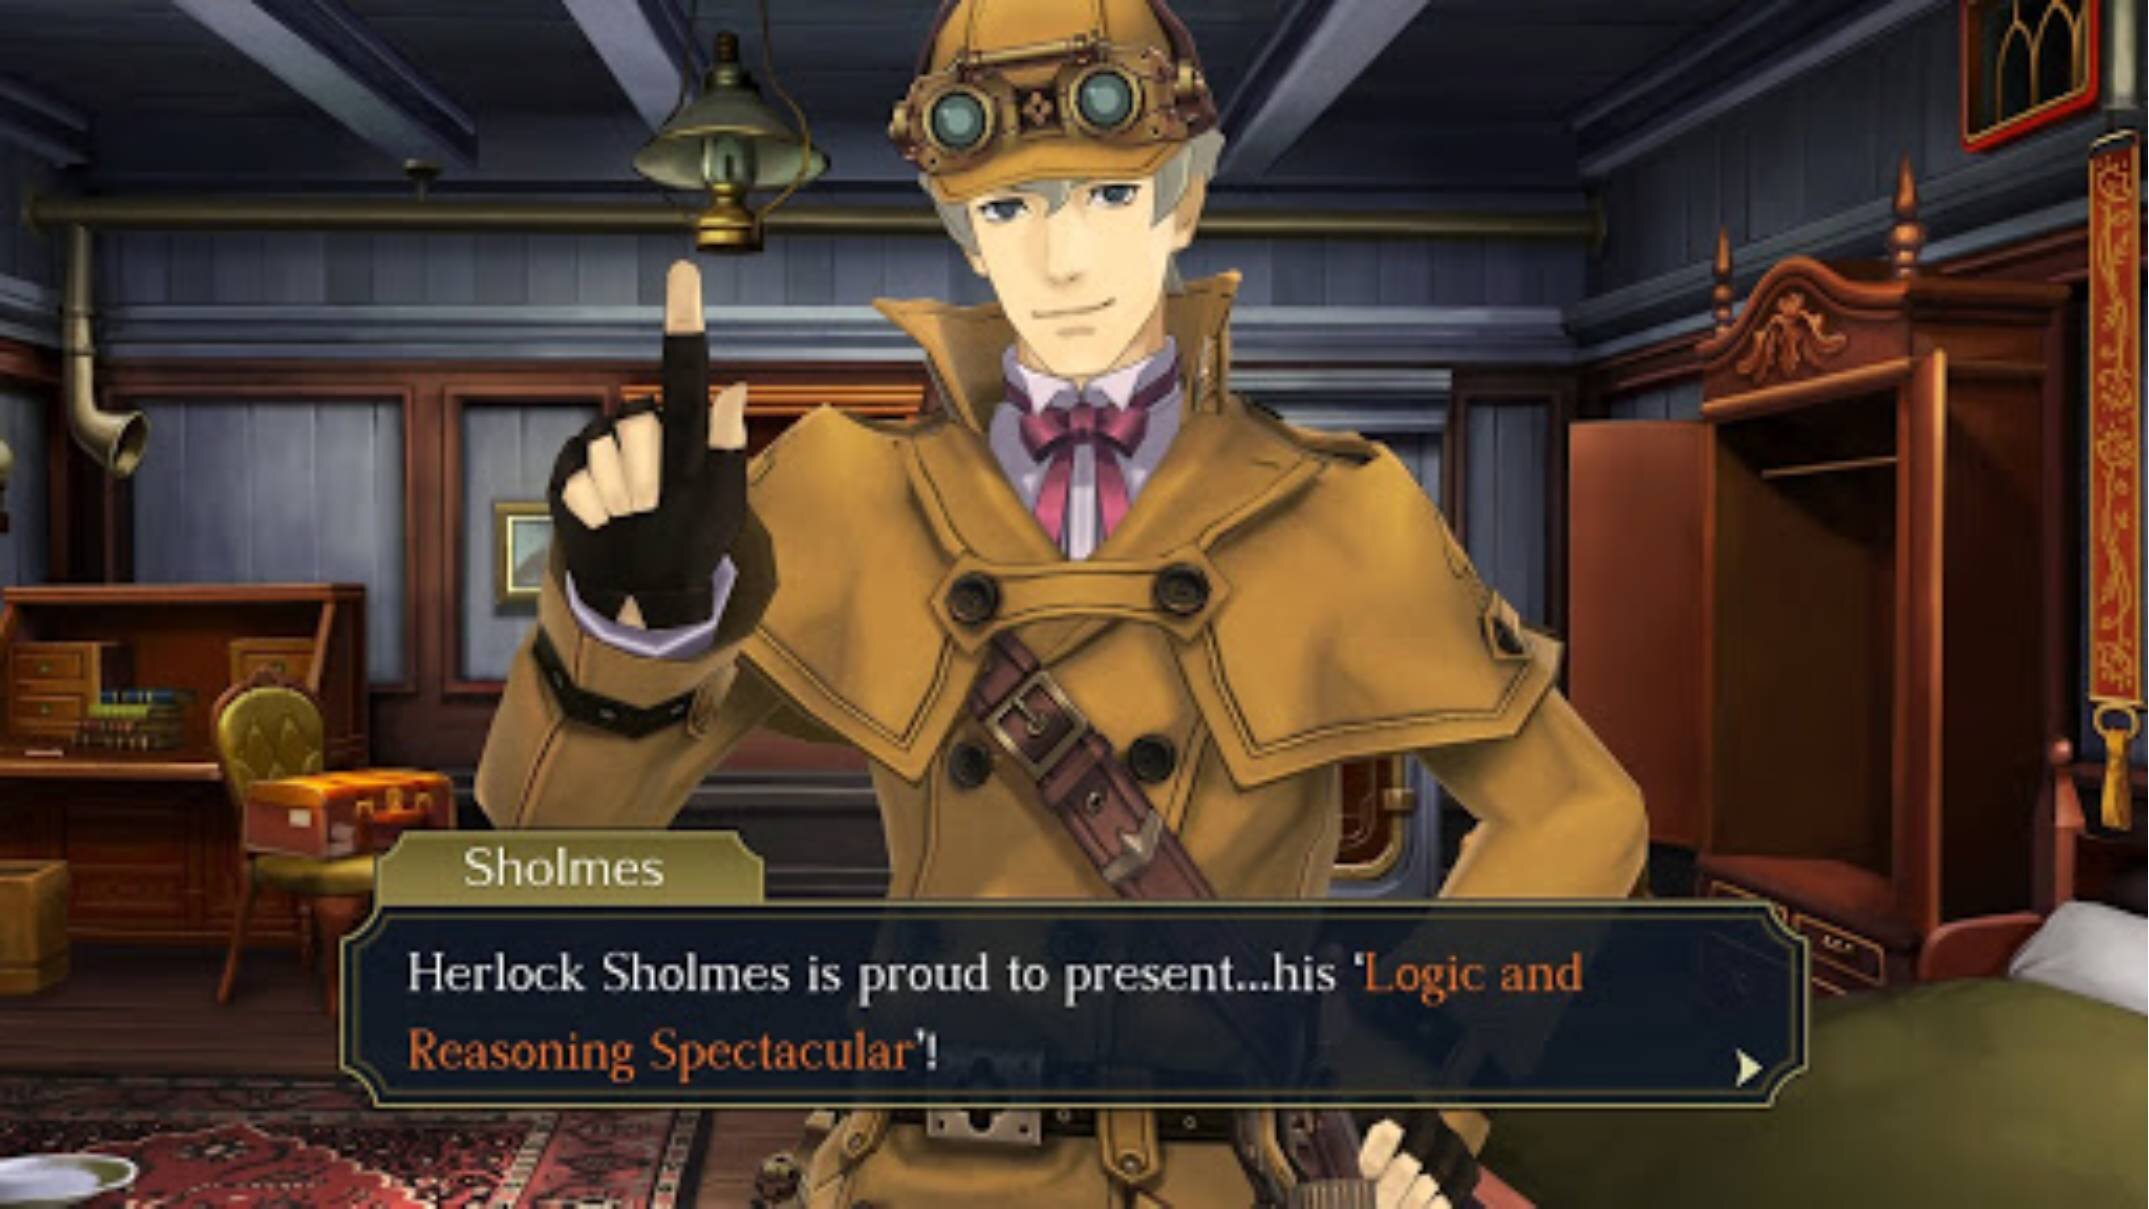 Objection!! It’s Herlock Sholmes, not Sherlock Holmes!